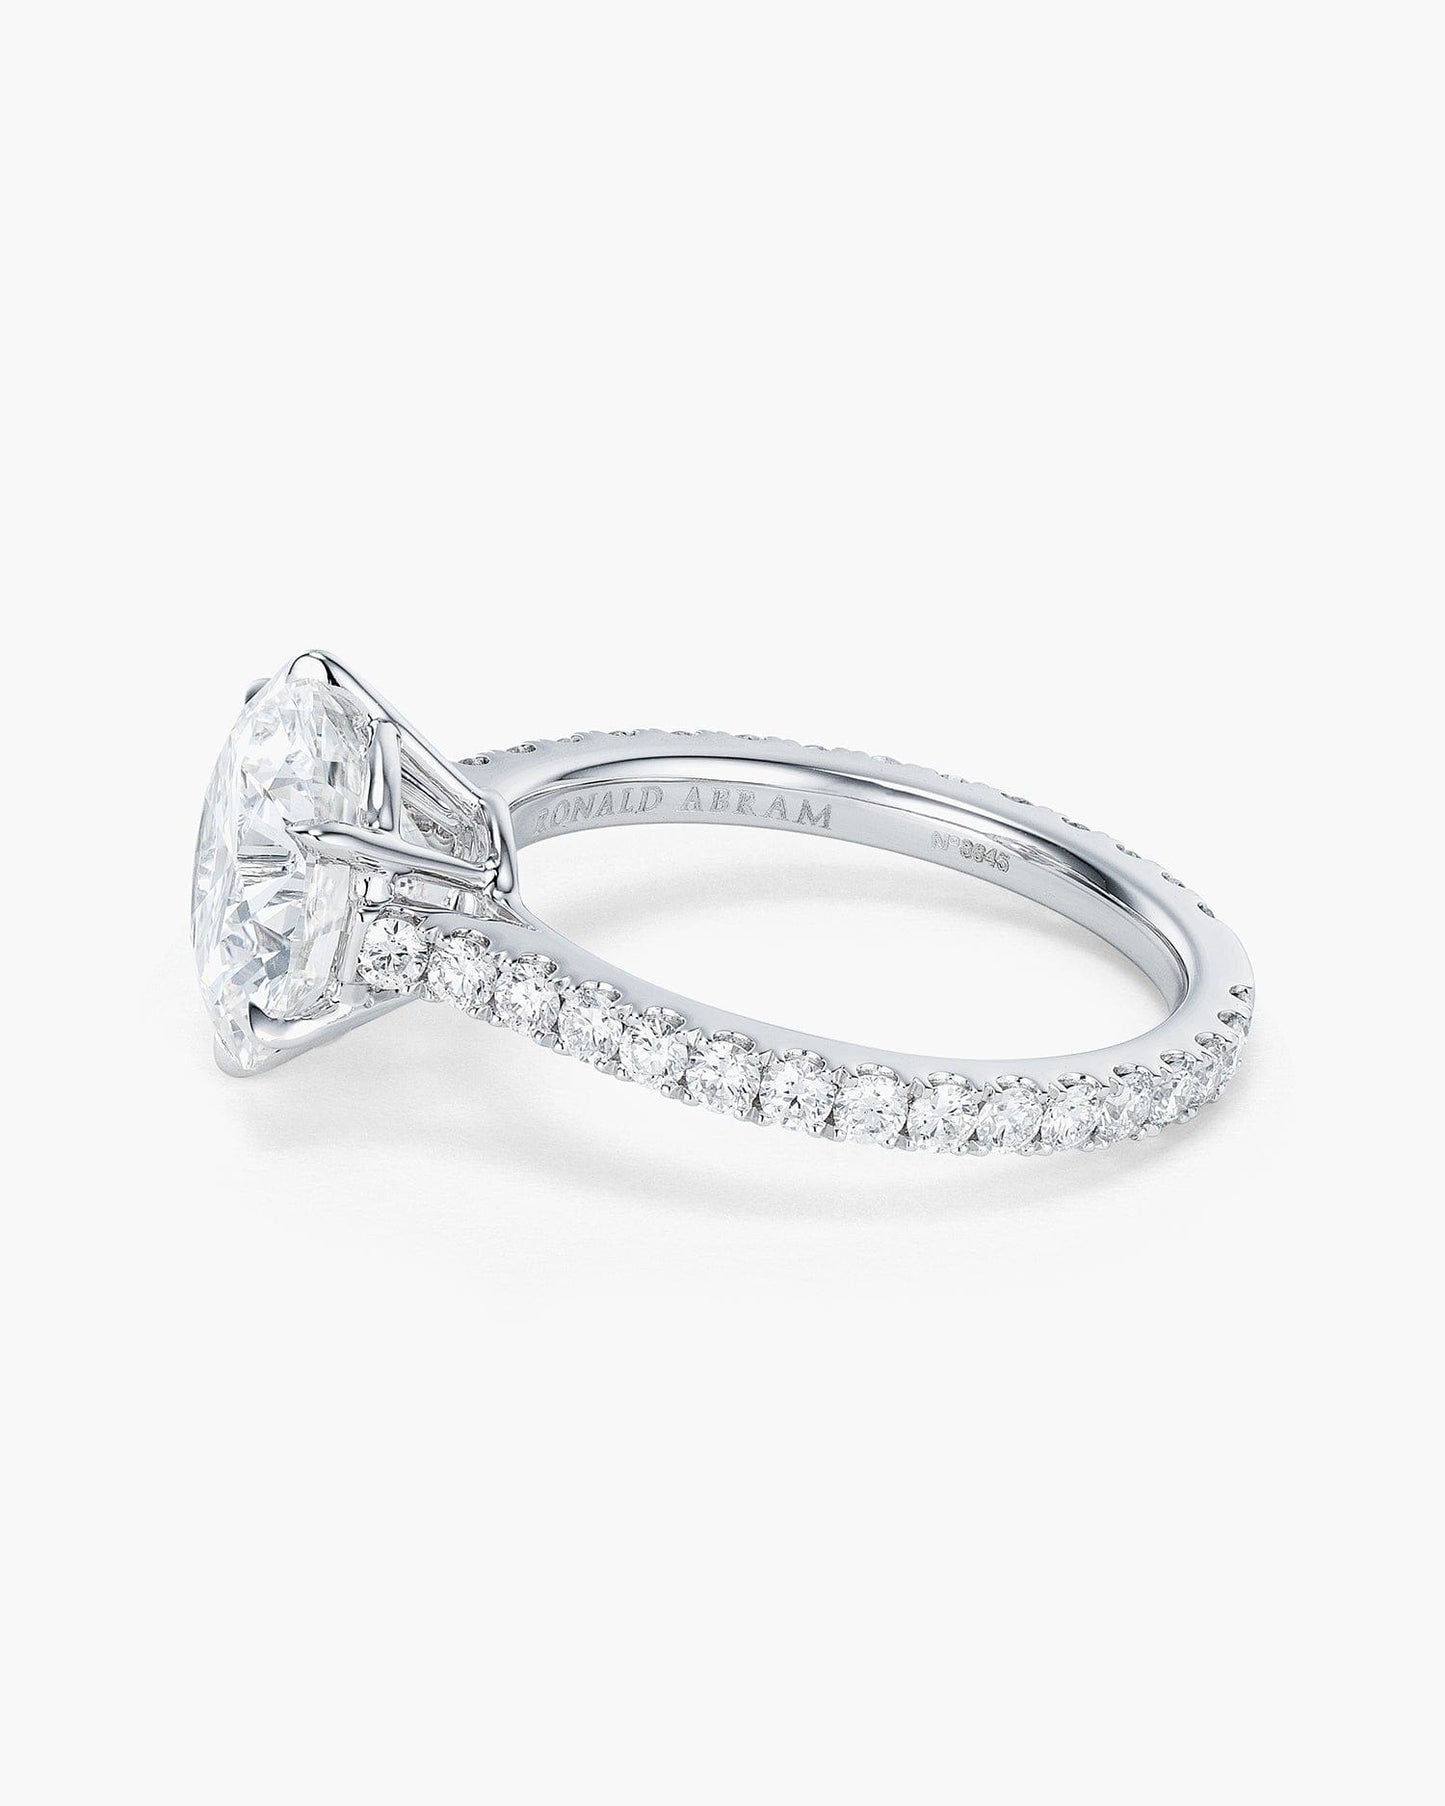 3.08 carat Round Brilliant Cut Diamond Ring